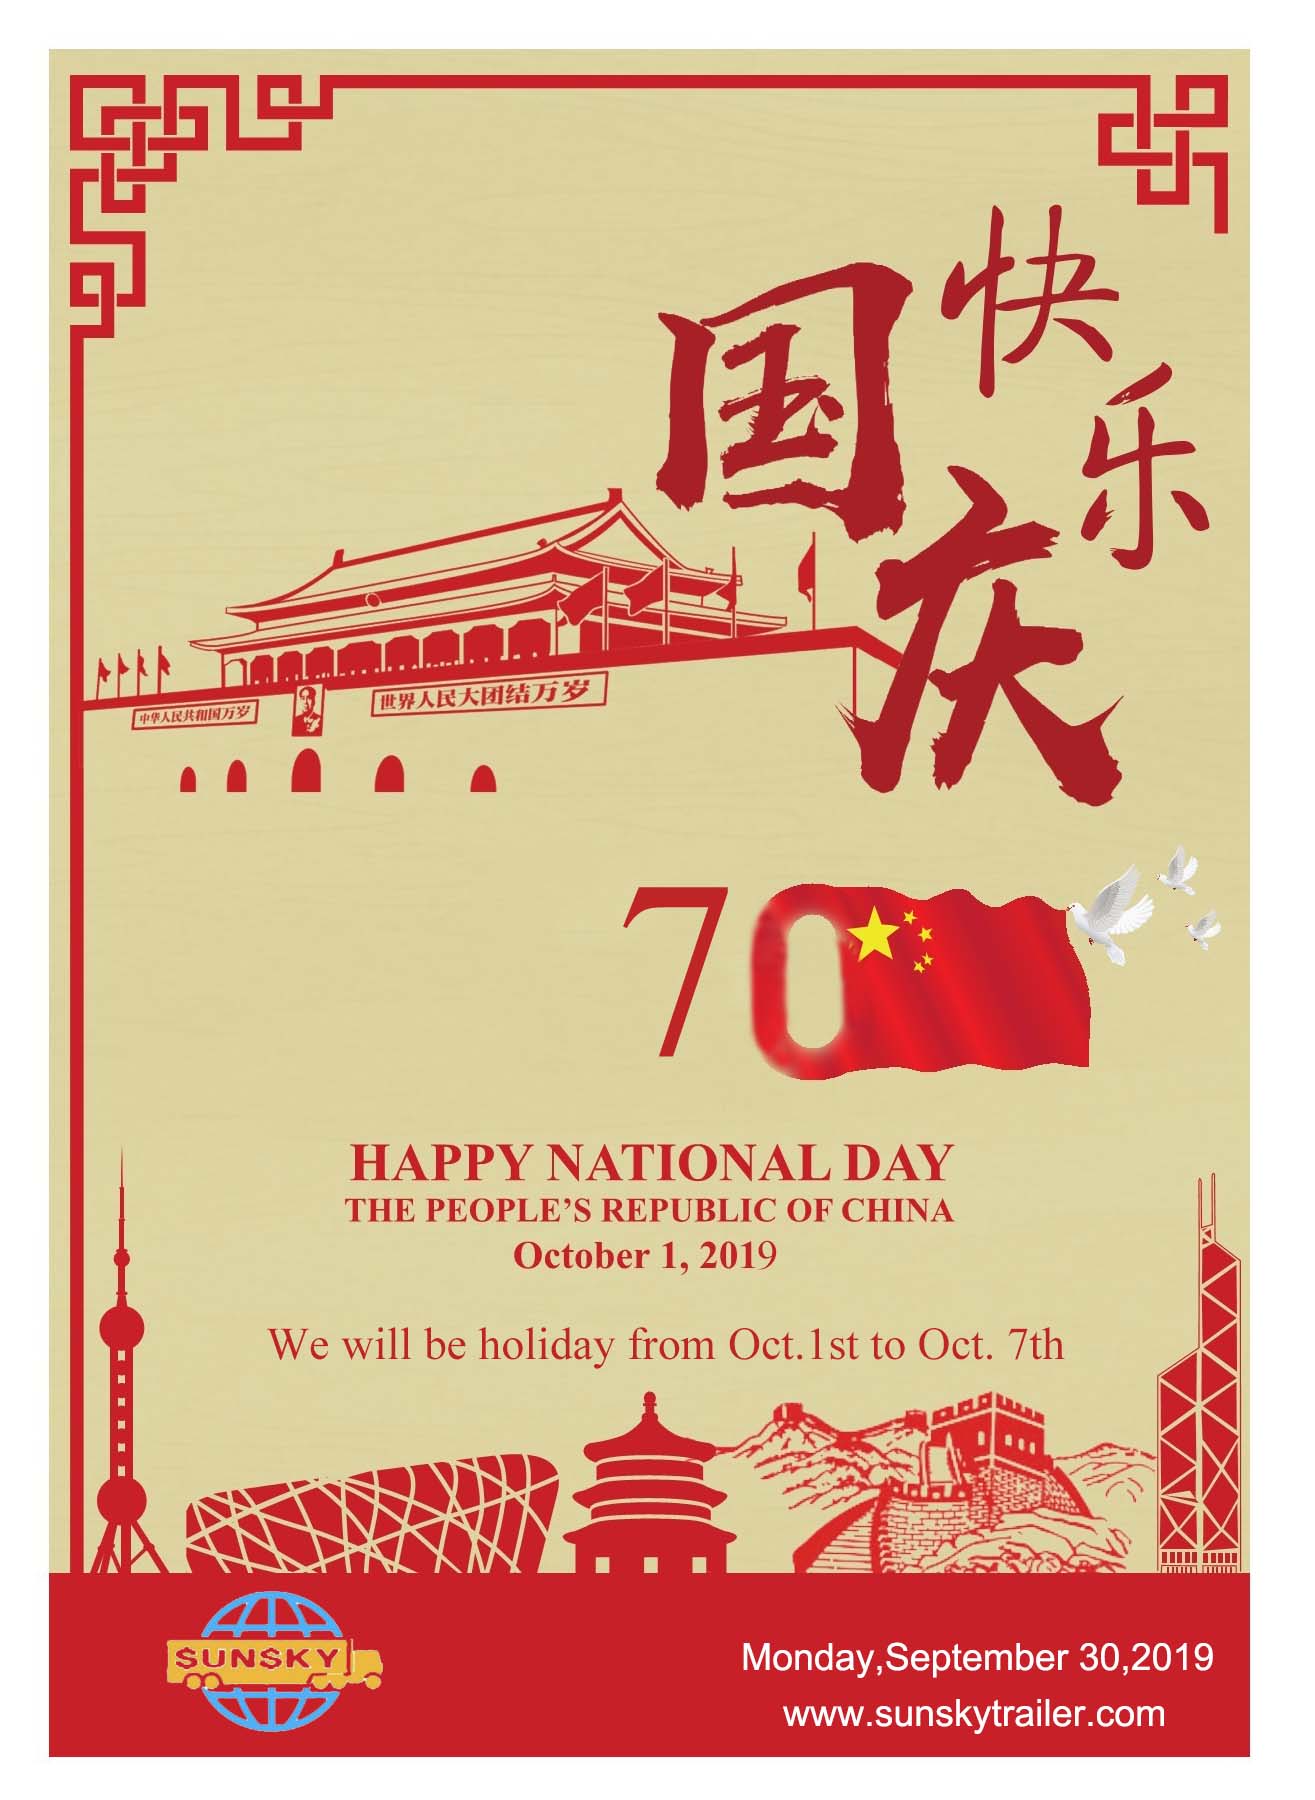 trailer và xe tải của Sunsky: chúc mừng ngày quốc khánh Trung Quốc 70 năm